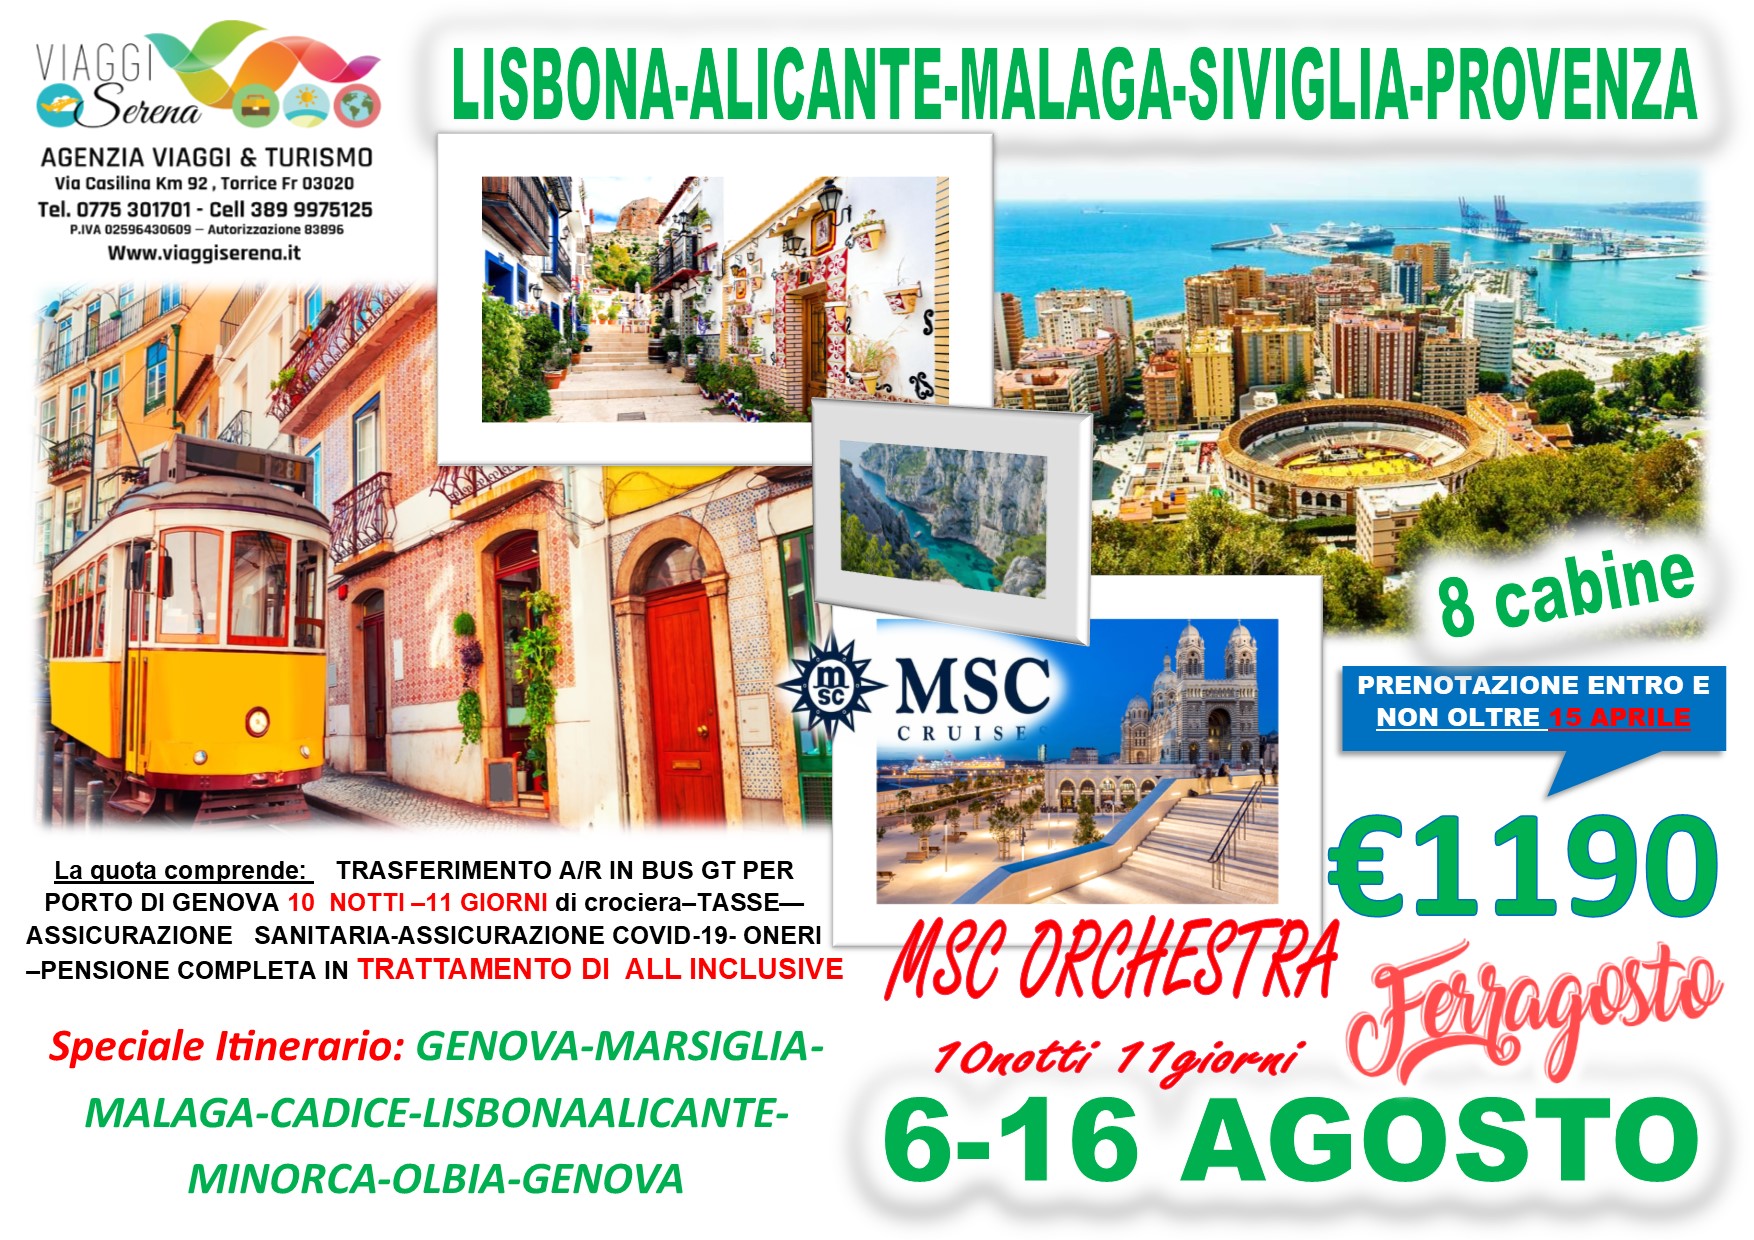 Viaggi di Gruppo: Crociera Lisbona, Alicante, Malaga , Provenza & Siviglia 6-16 Agosto €1190,00